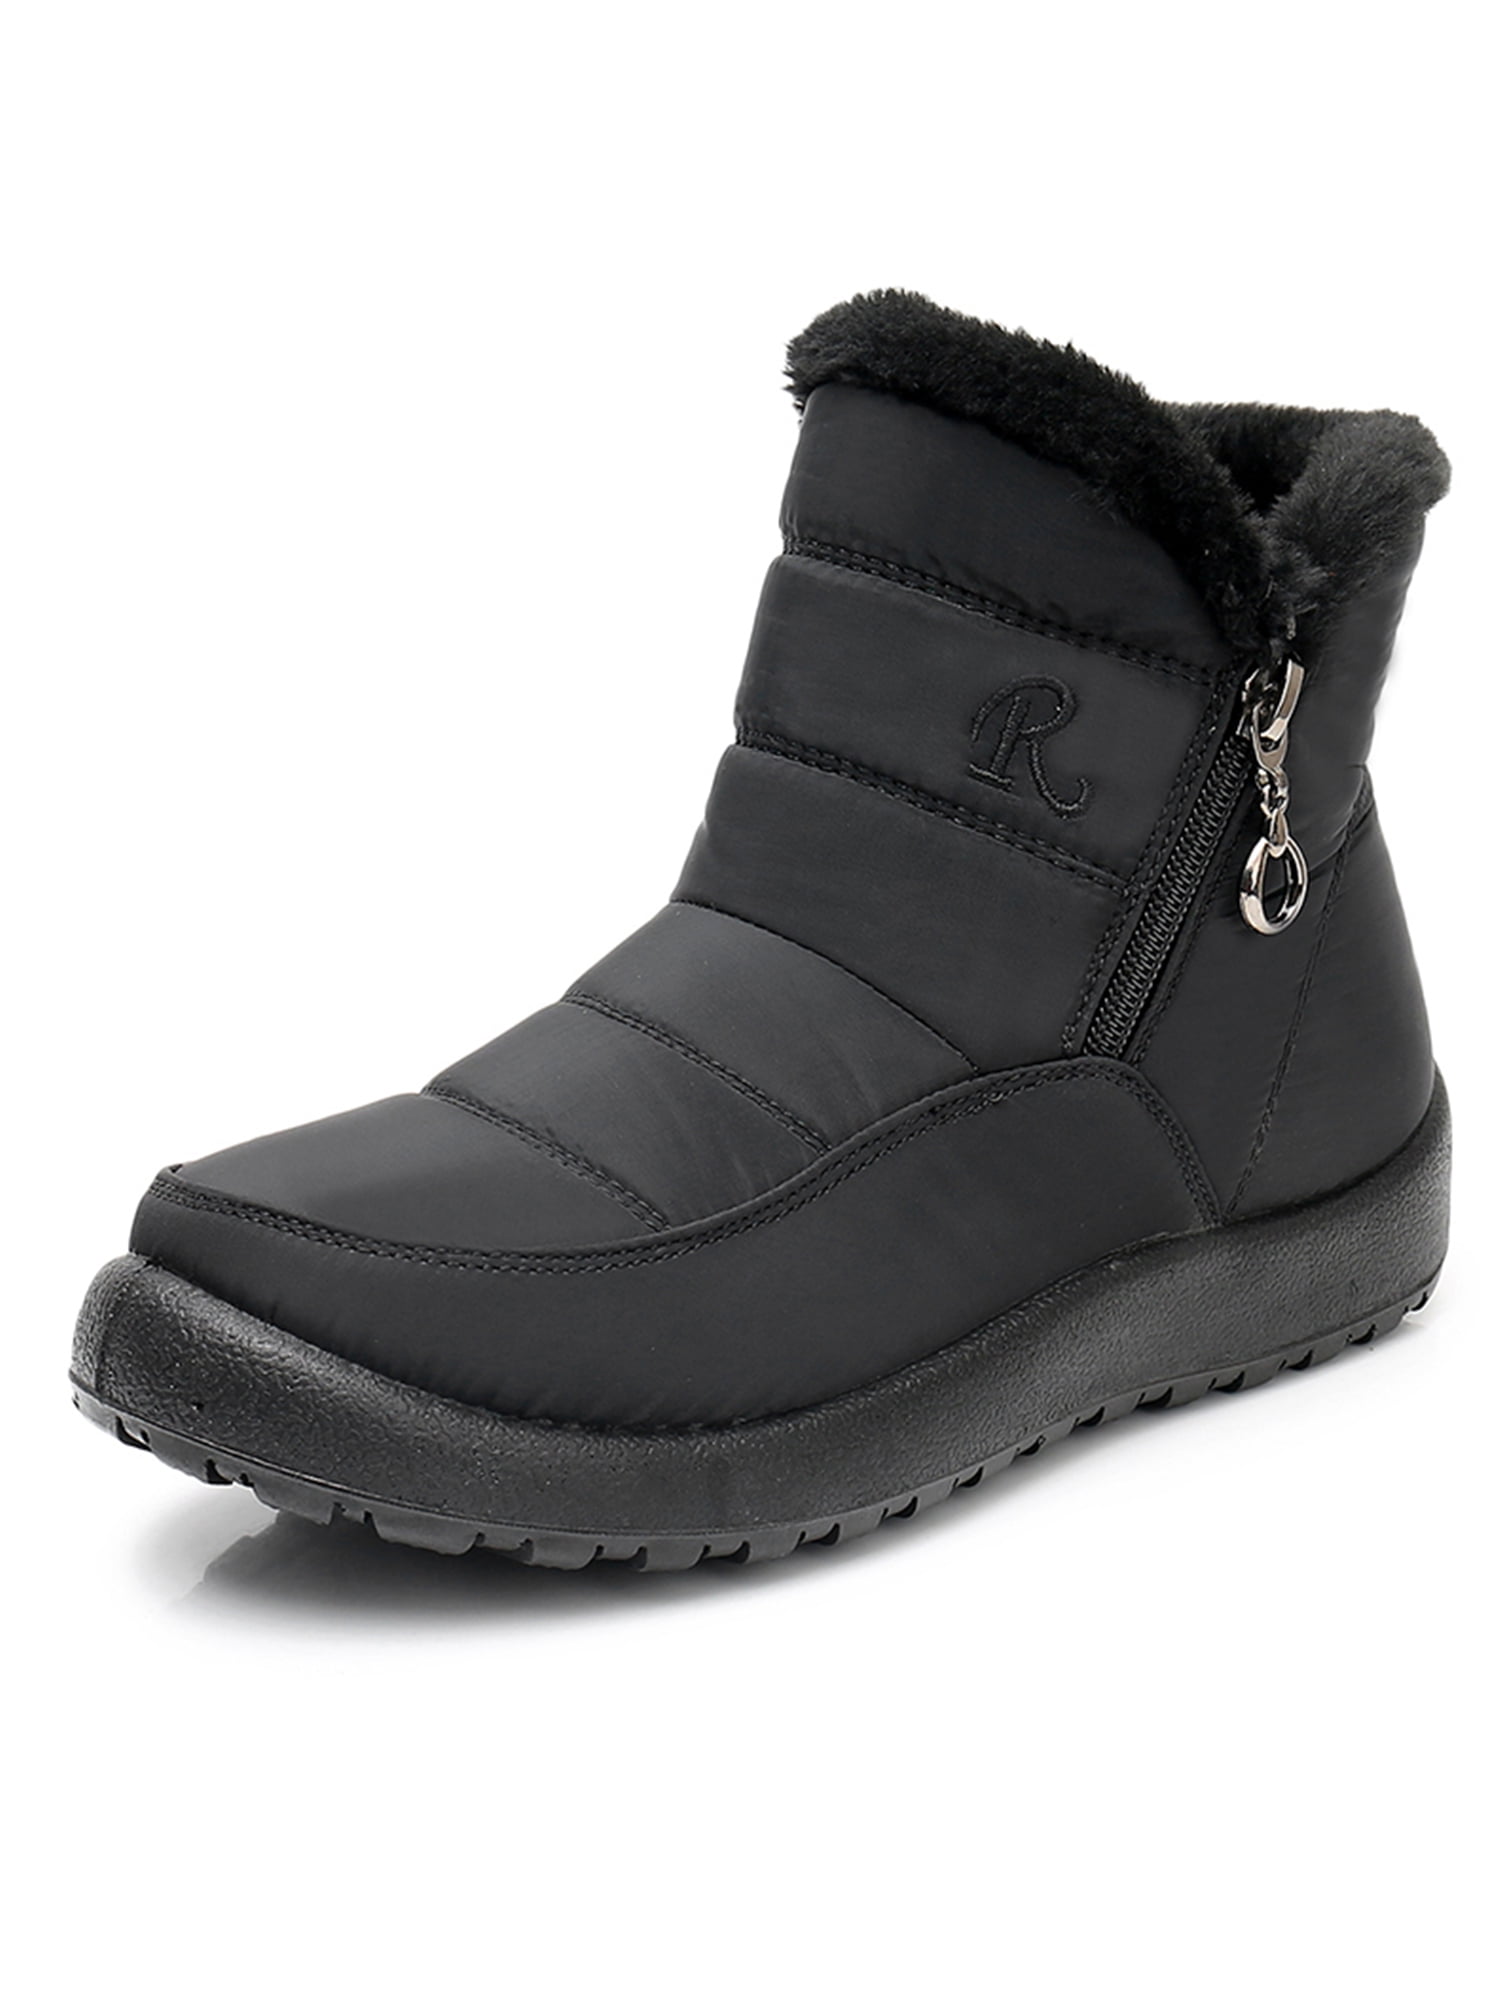 Crocowalk Women Winter Snow Boots Warm Ankle Boots Anti-Slip Waterproof ...